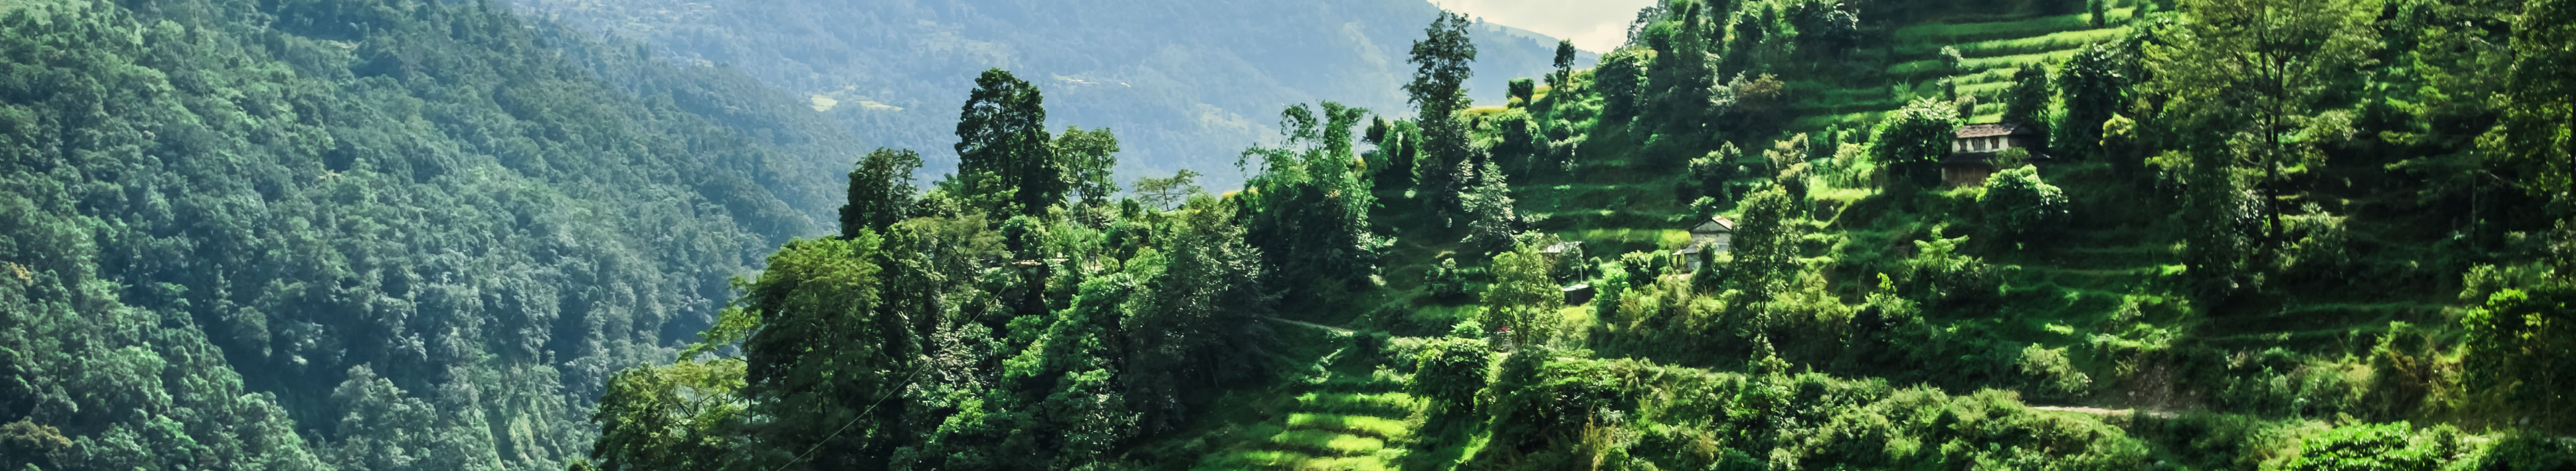 Grünes Tal mit Reisterrassen im nepalesischen Himalaya.